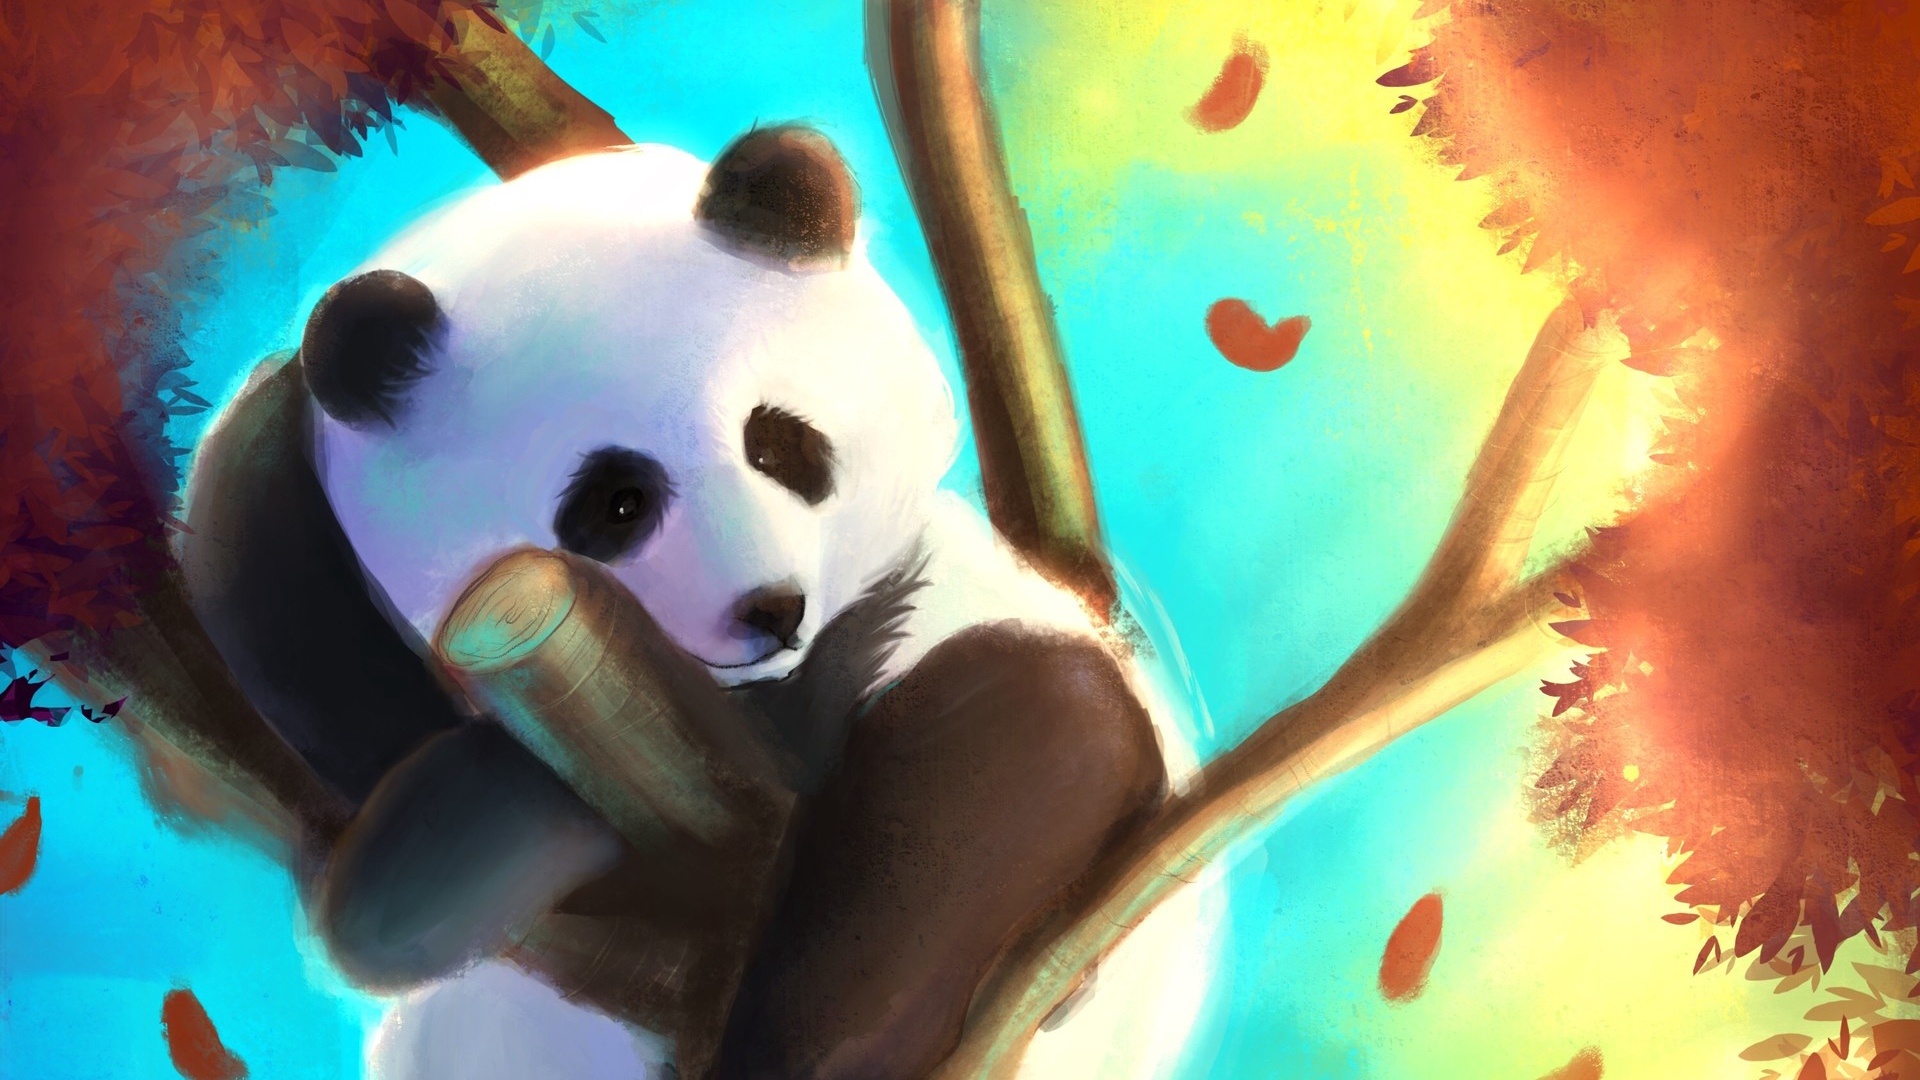 沙雕熊猫壁纸图片